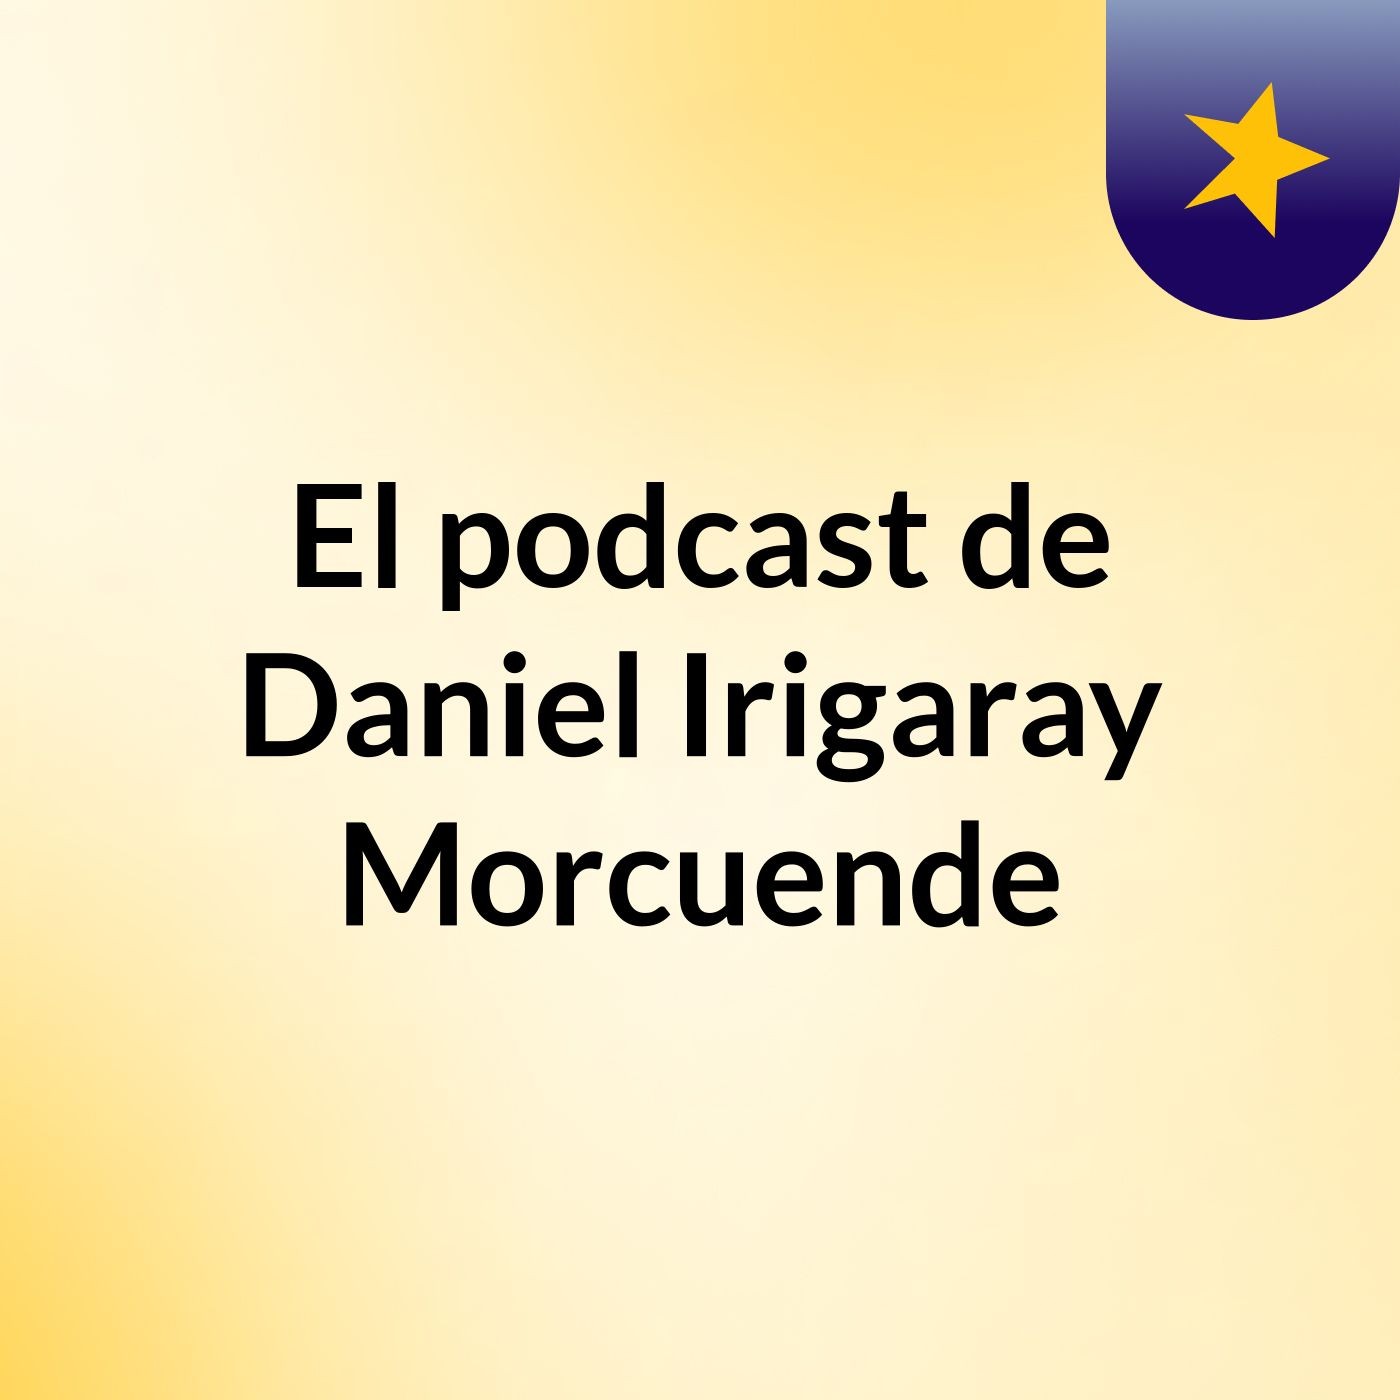 El podcast de Daniel Irigaray Morcuende